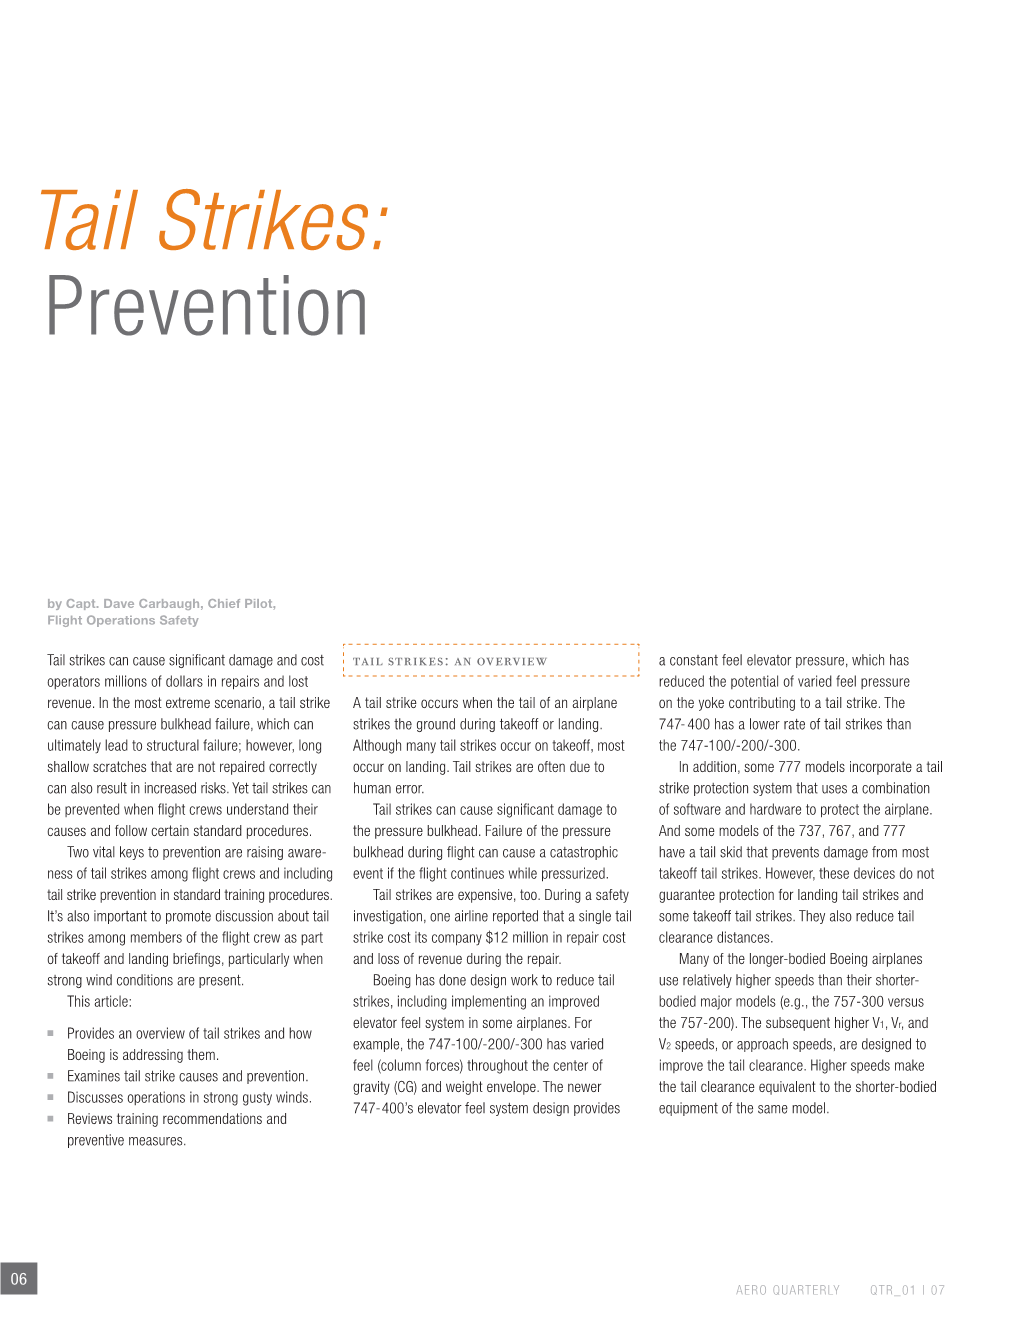 Tail Strikes: Prevention